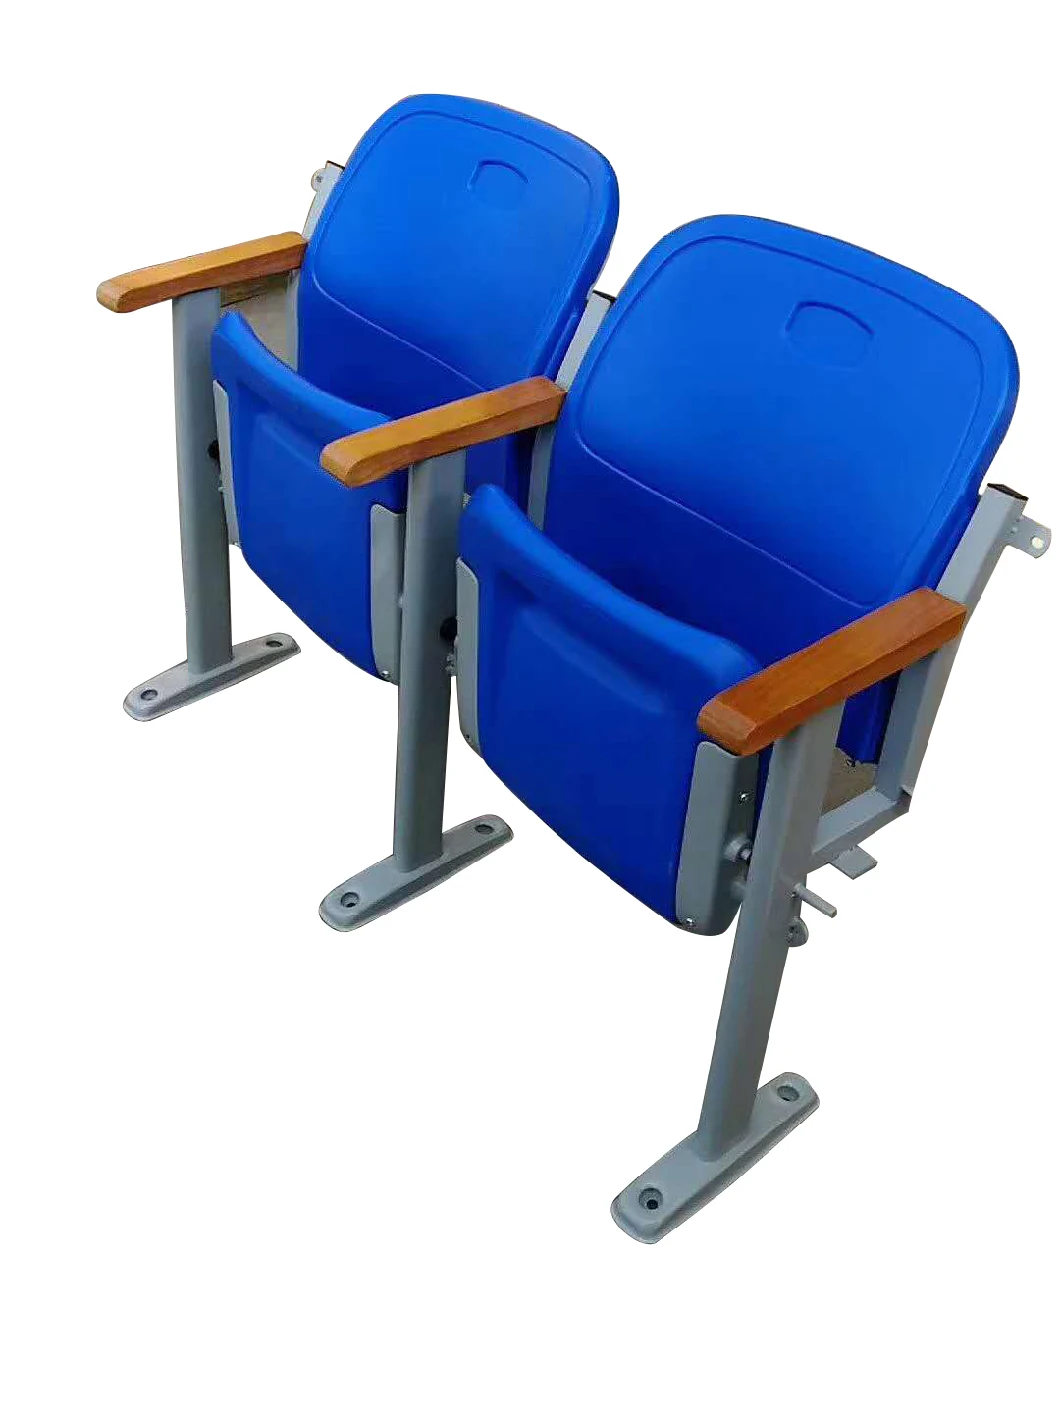 Cheap Price Outdoor Public Furniture Folding Plastic Auditorium Chairs for Stadium Seating